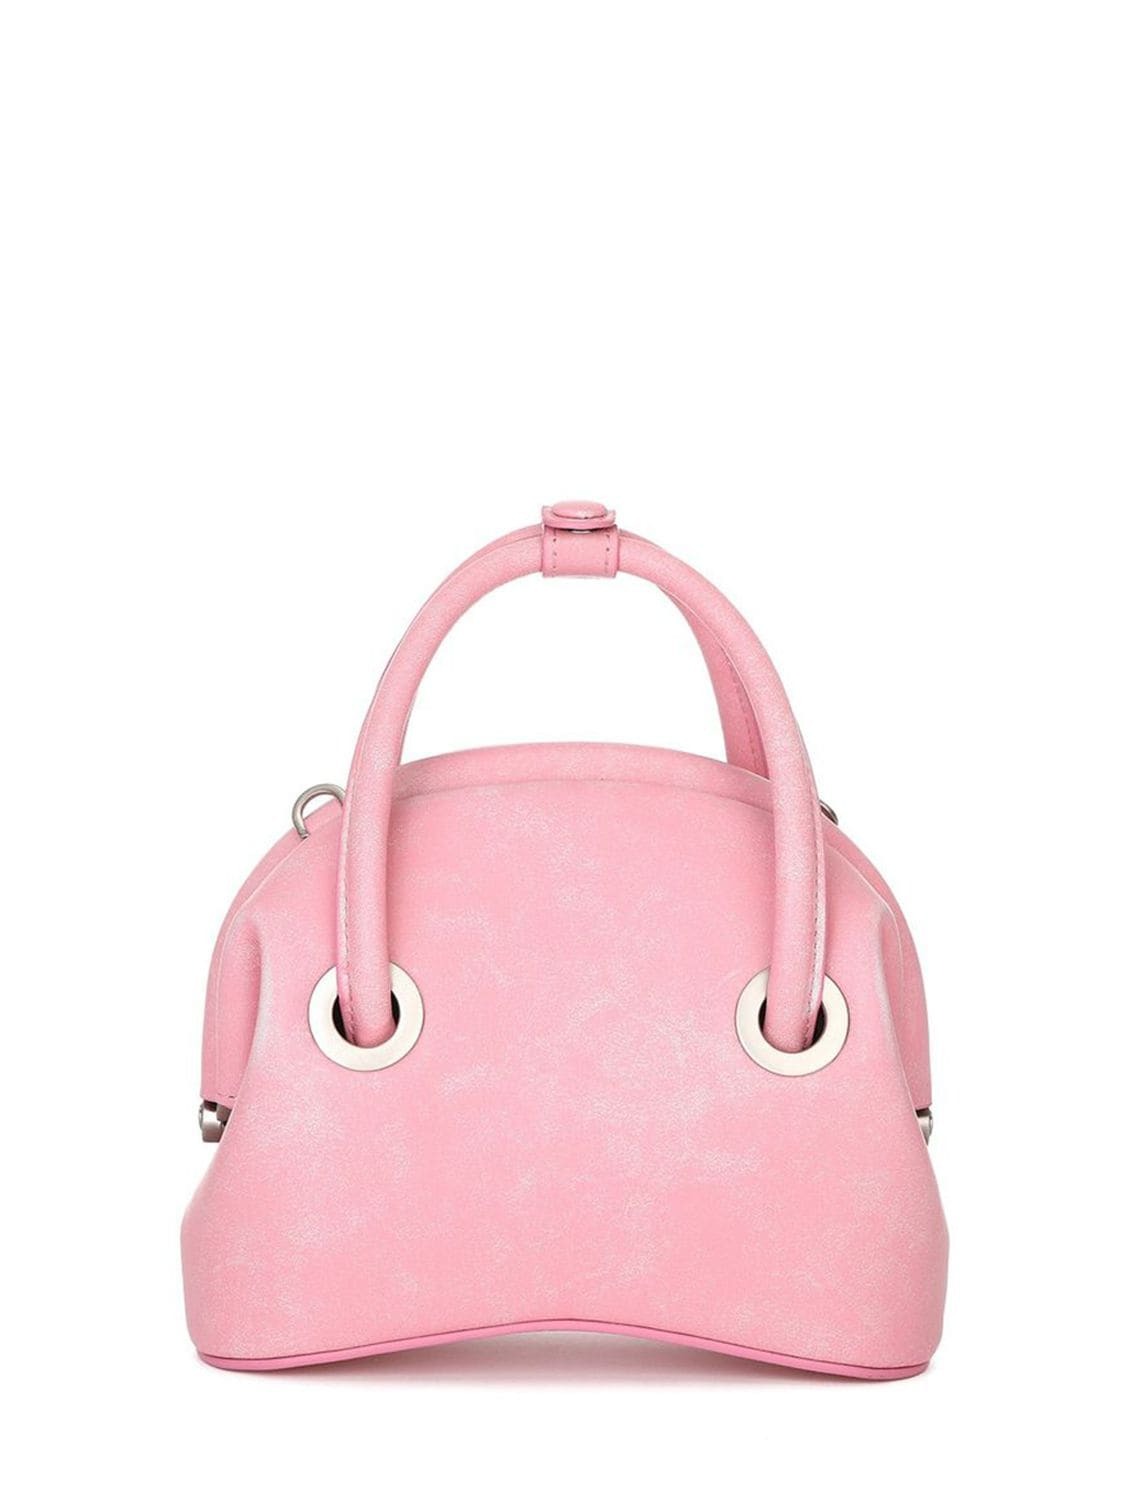 OSOI Mini Circle Leather Top Handle Bag in pink